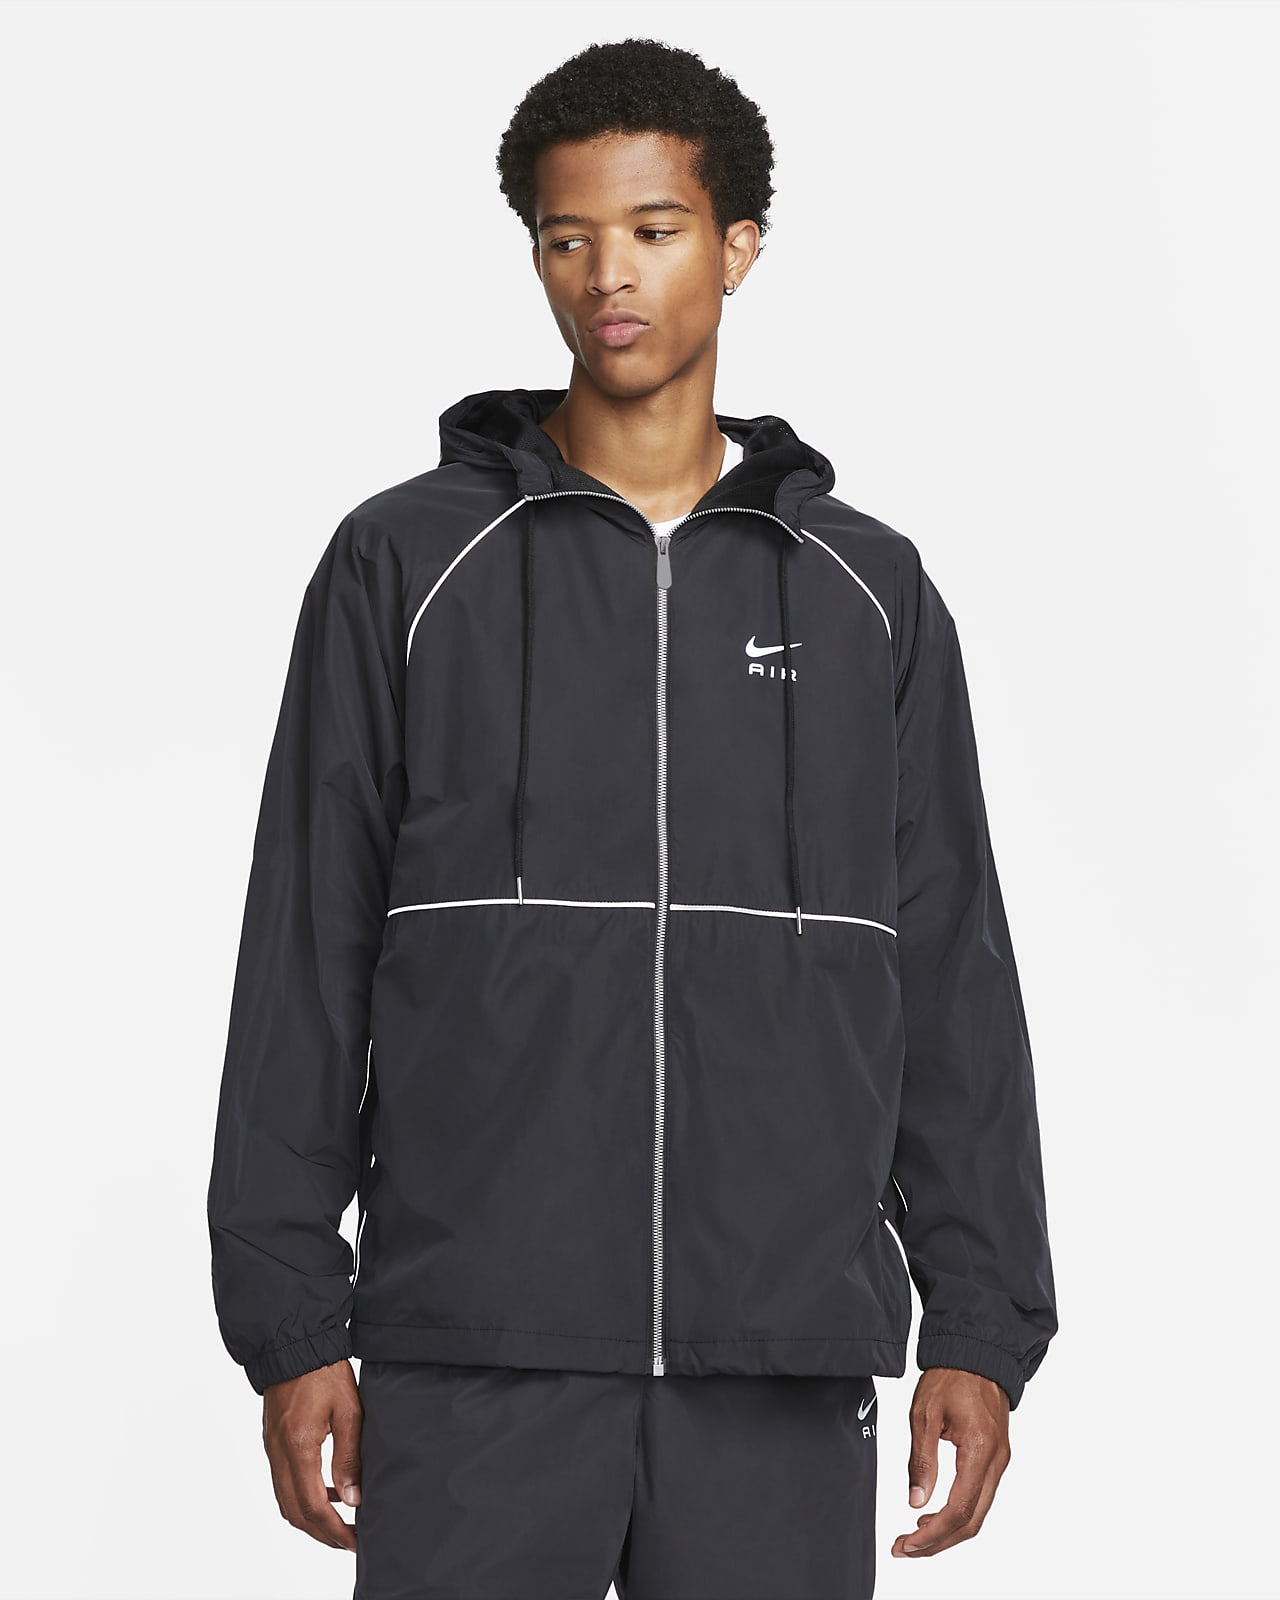 Nike Air Men's Full-Zip Hooded Woven Jacket. Nike LU